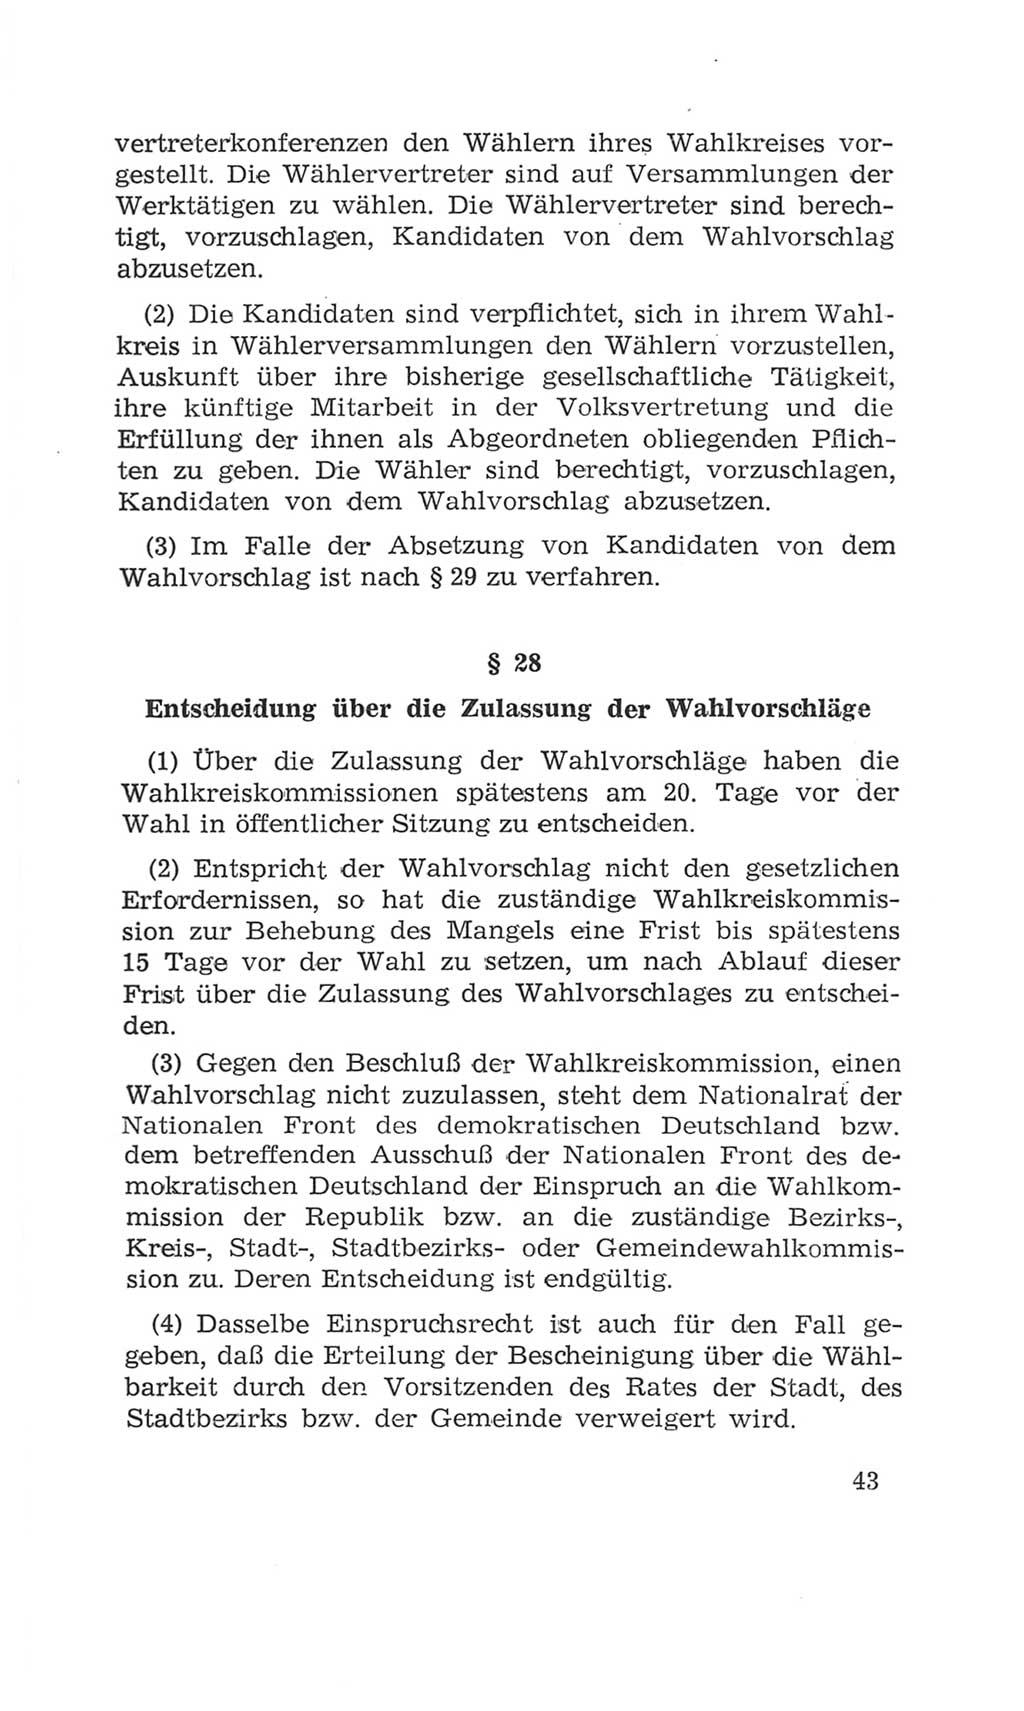 Volkskammer (VK) der Deutschen Demokratischen Republik (DDR), 4. Wahlperiode 1963-1967, Seite 43 (VK. DDR 4. WP. 1963-1967, S. 43)